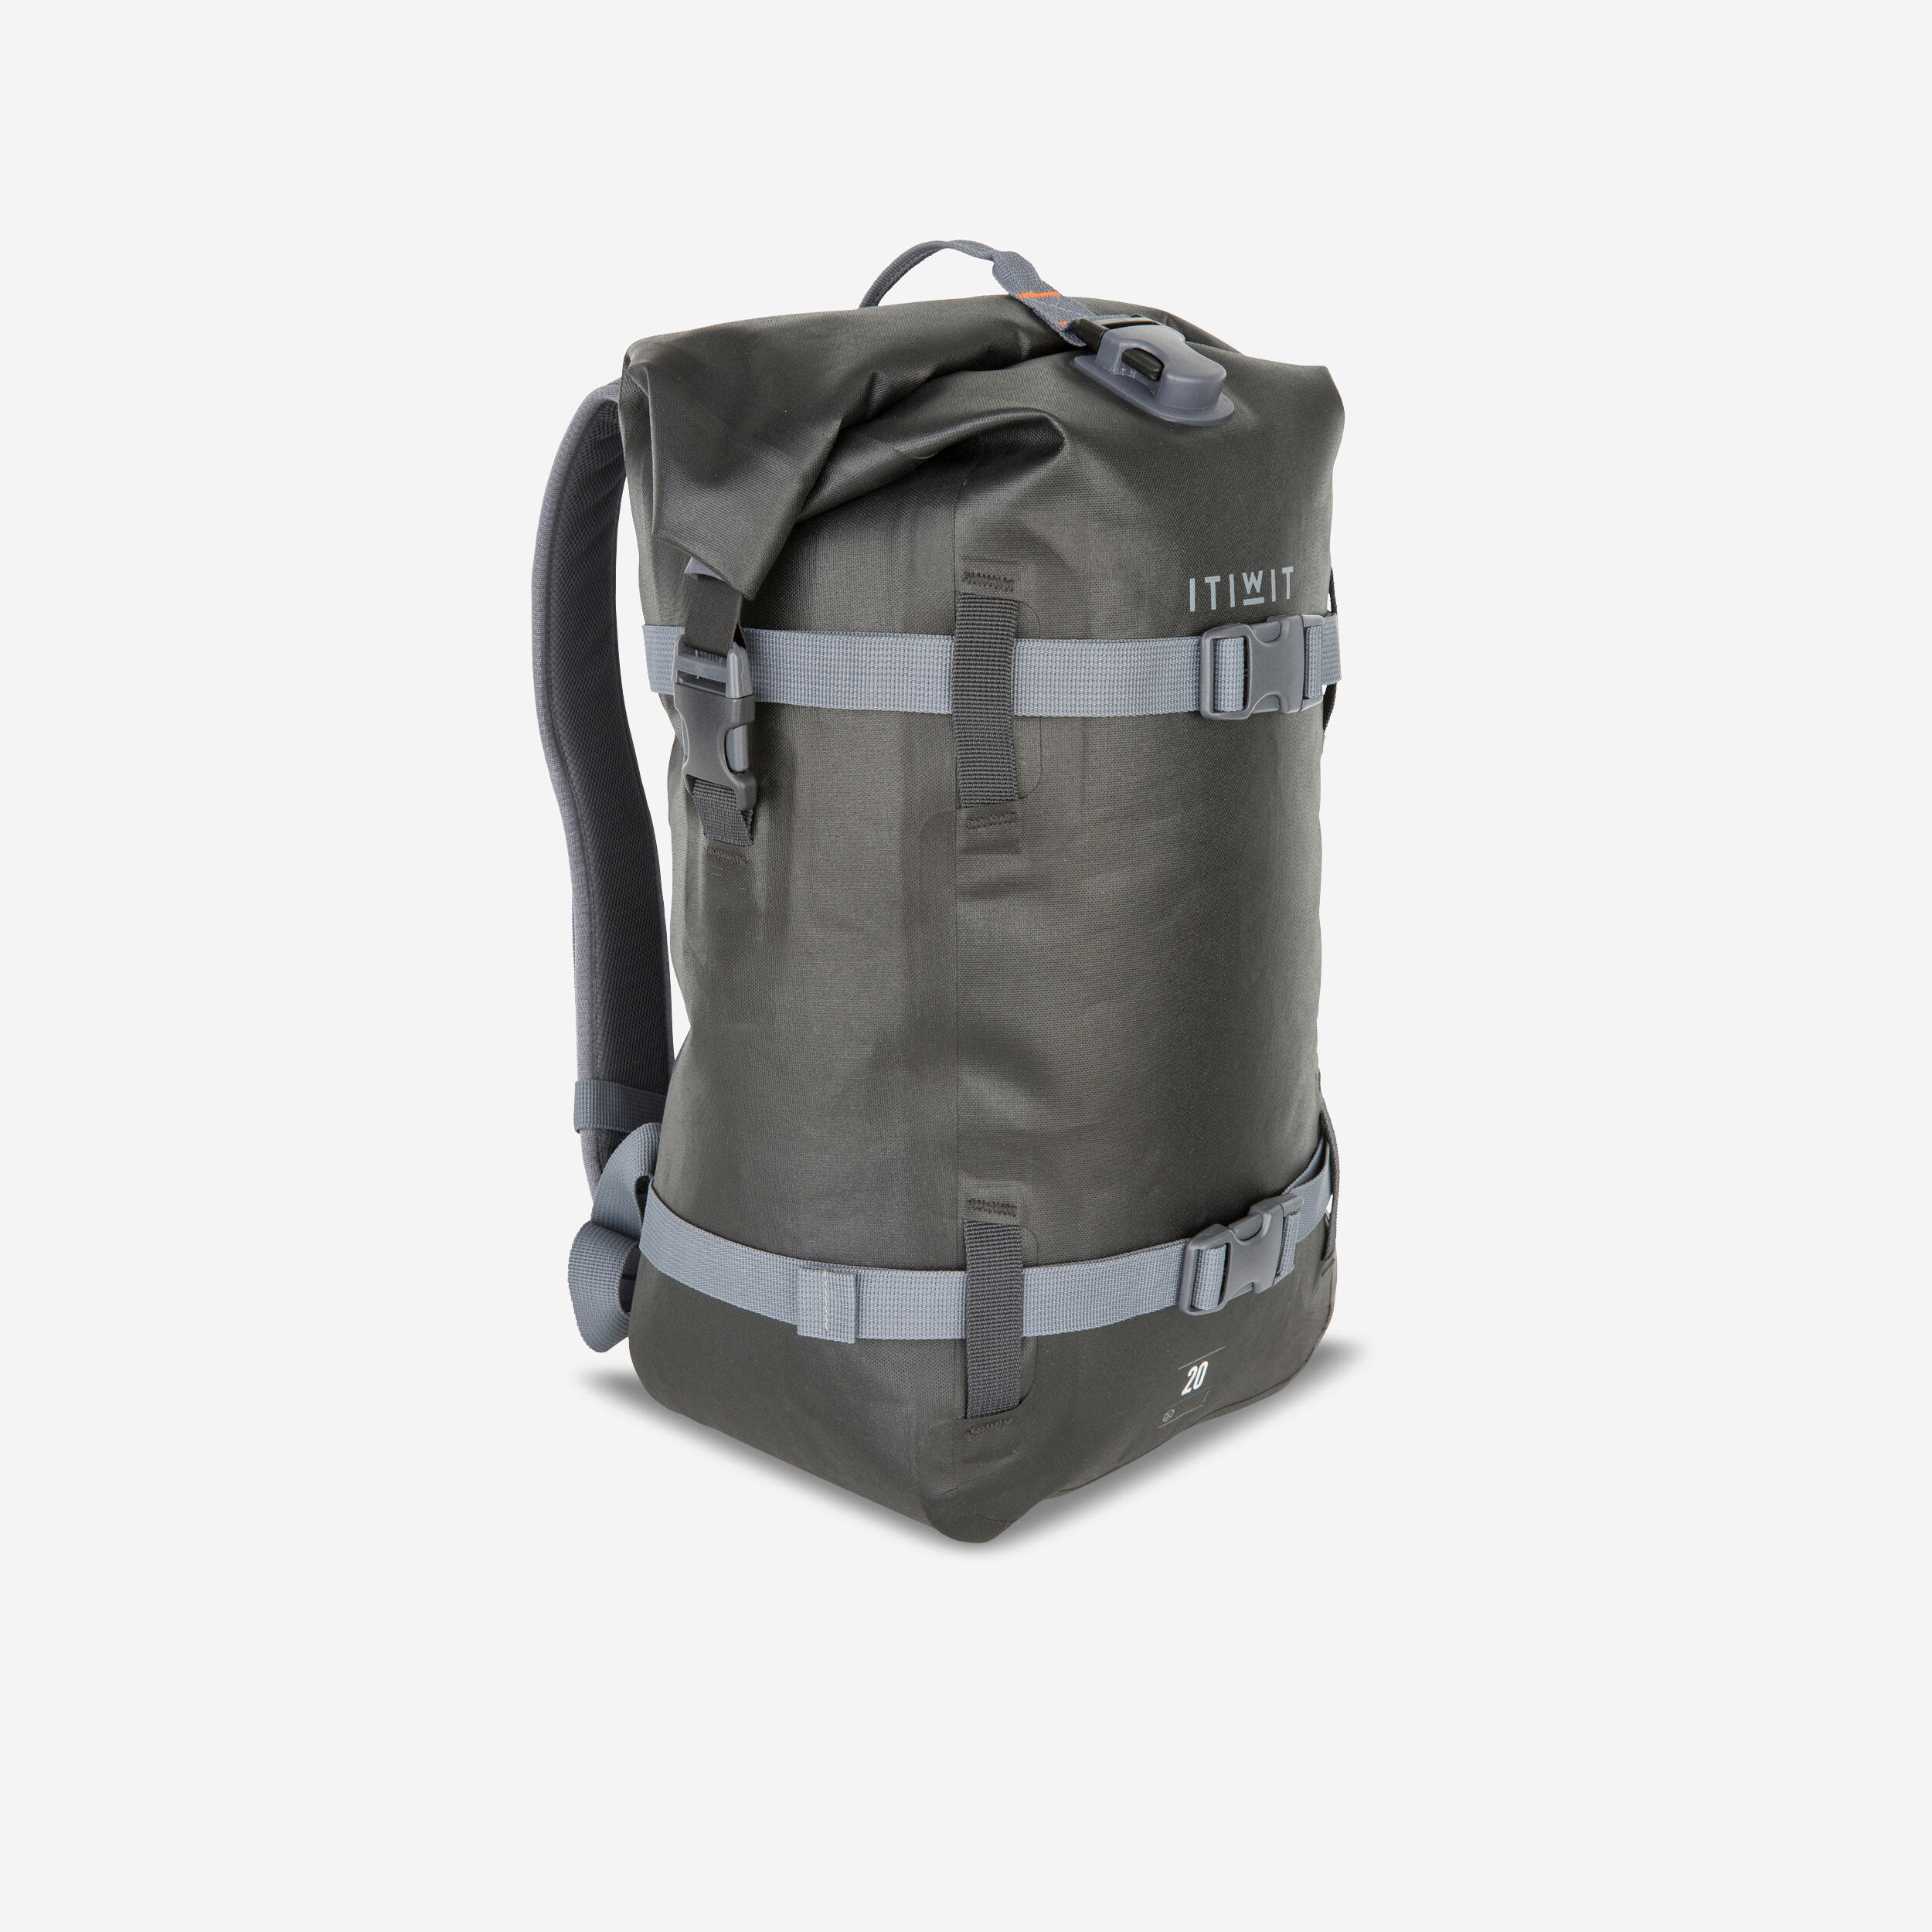 Waterproof Backpack 20L ITIWIT - Decathlon